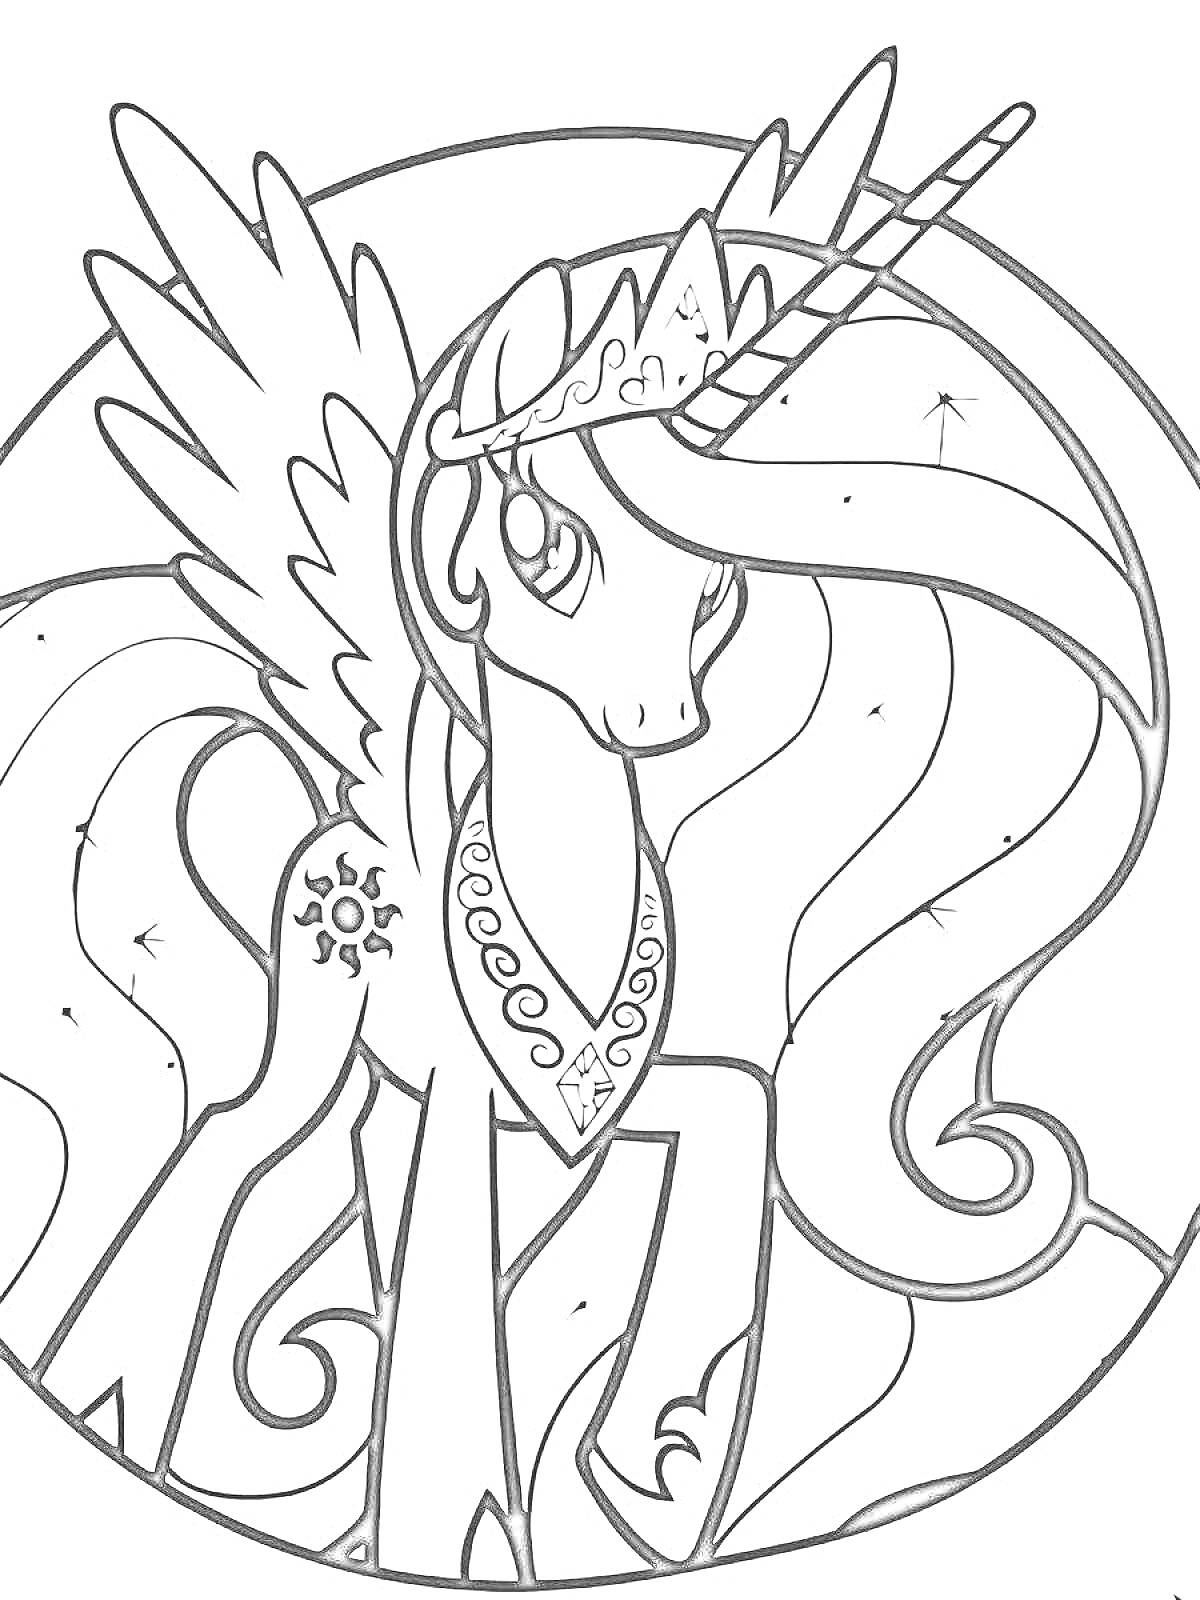 Принцесса Селестия с большим крыльями и рогом, корона на голове, кьюти-марка в виде солнца, длинная волнистая грива, ожерелье и браслеты на ногах